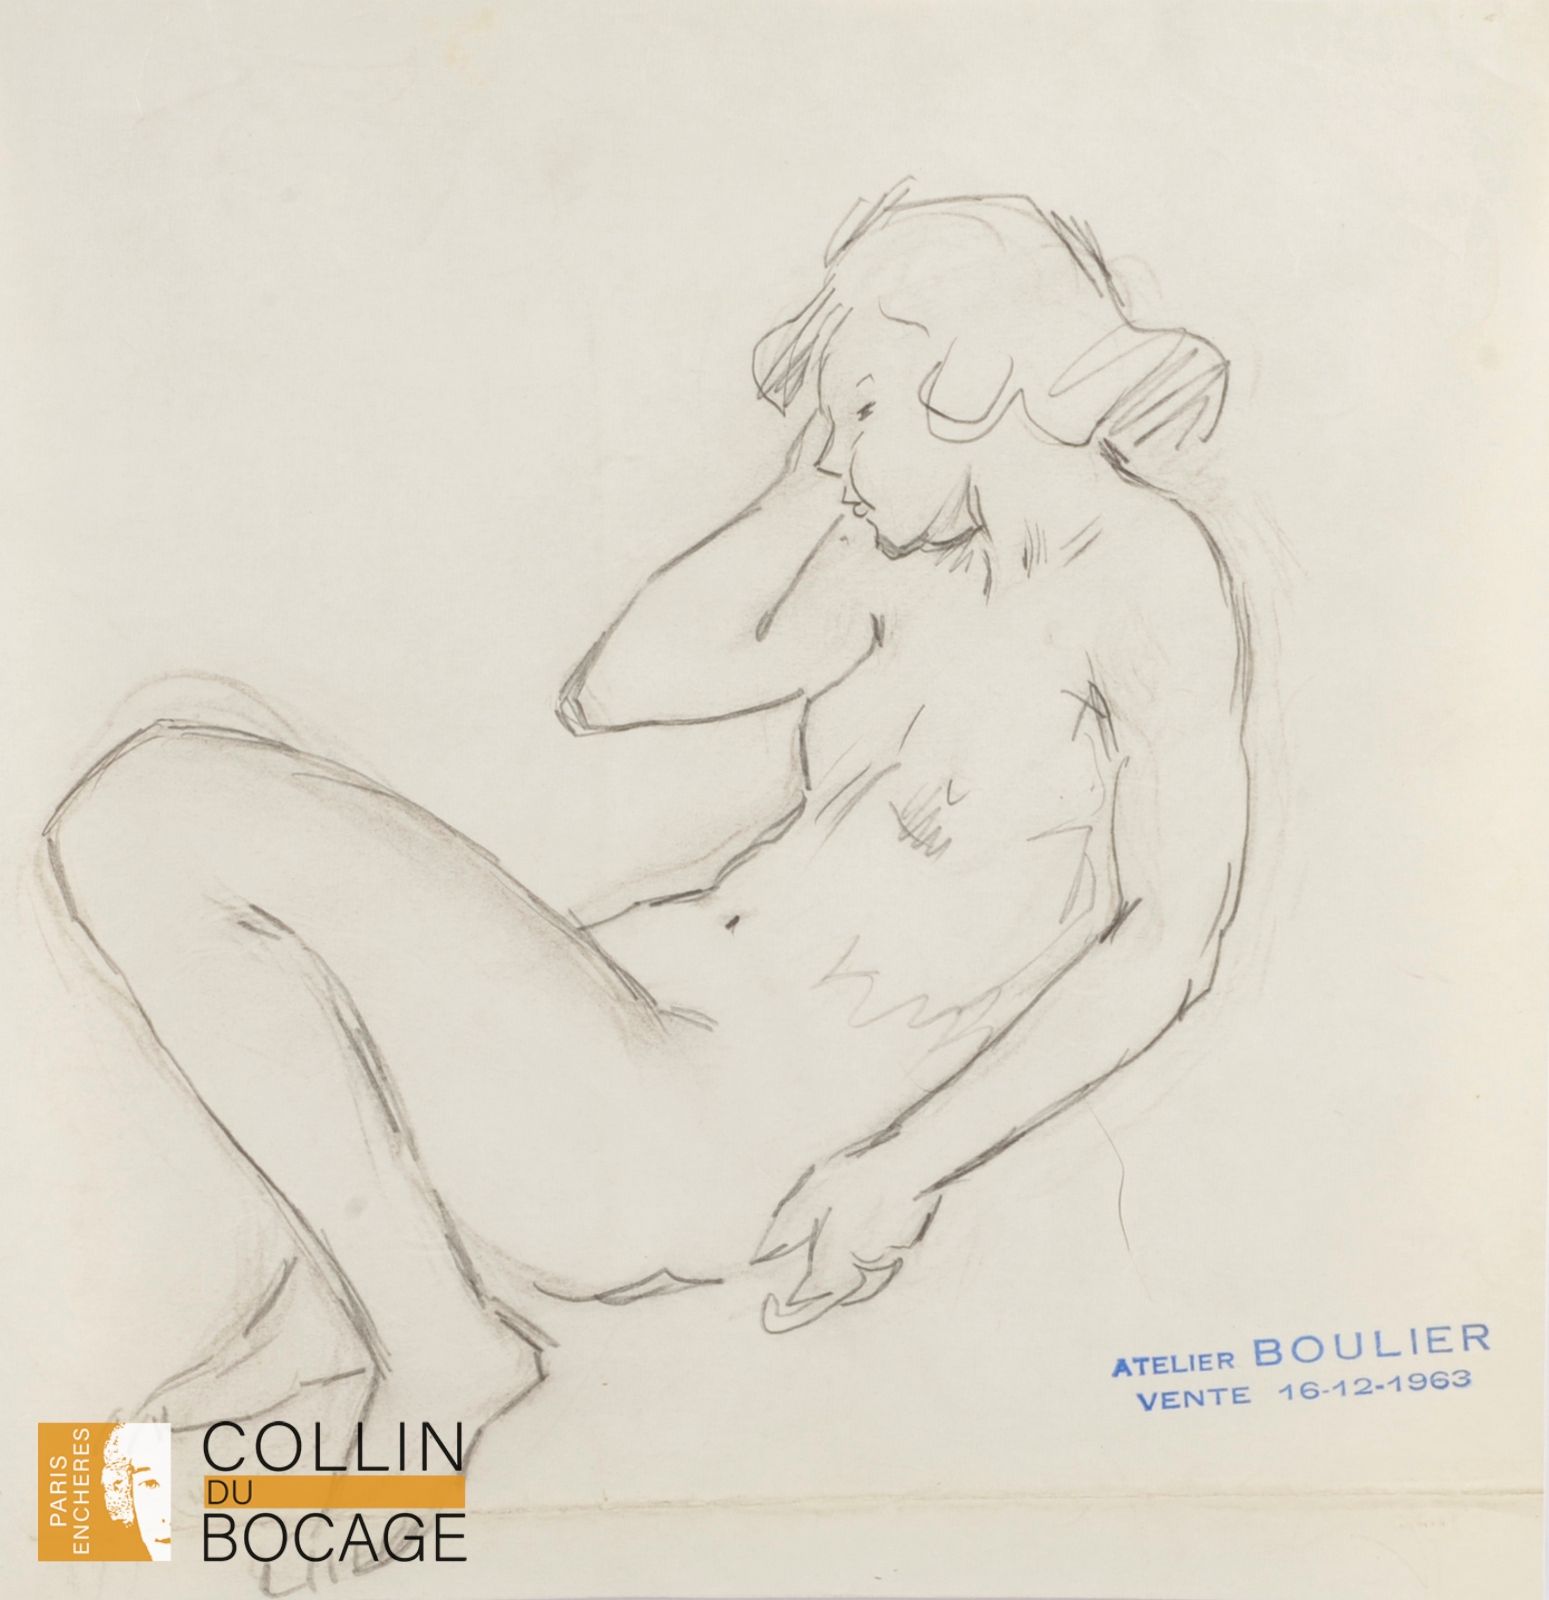 Null 吕西安-布利埃（1882-1963 年）

卧姿裸女
铅笔
工作室销售印章
22 x 20.5 厘米
折叠

戴头巾的少女 
印度墨水和水墨
销售印章&hellip;